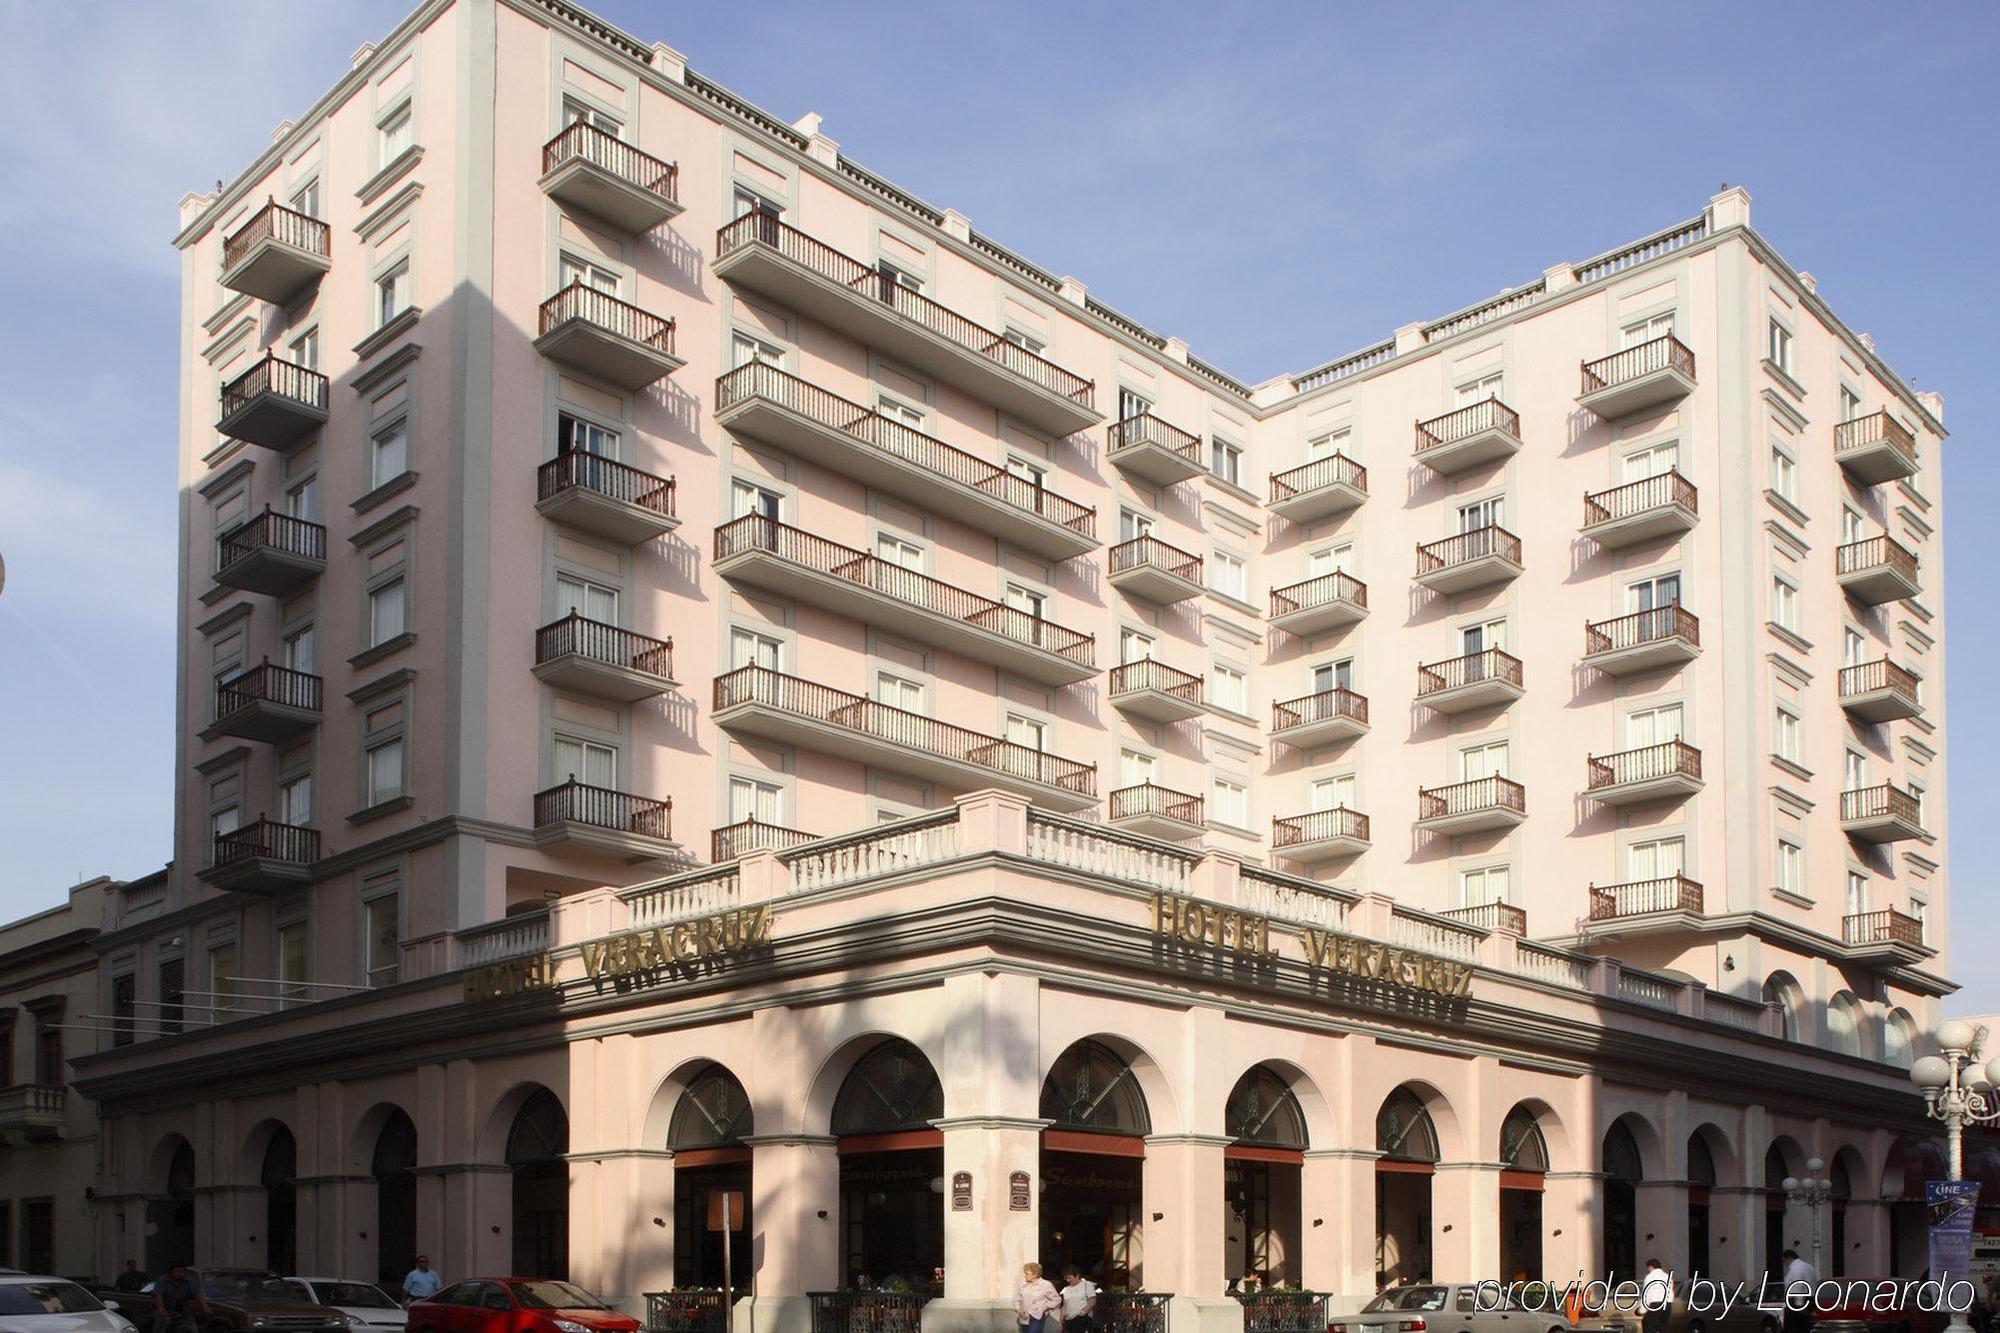 Hotel Veracruz Centro Historico Eksteriør bilde